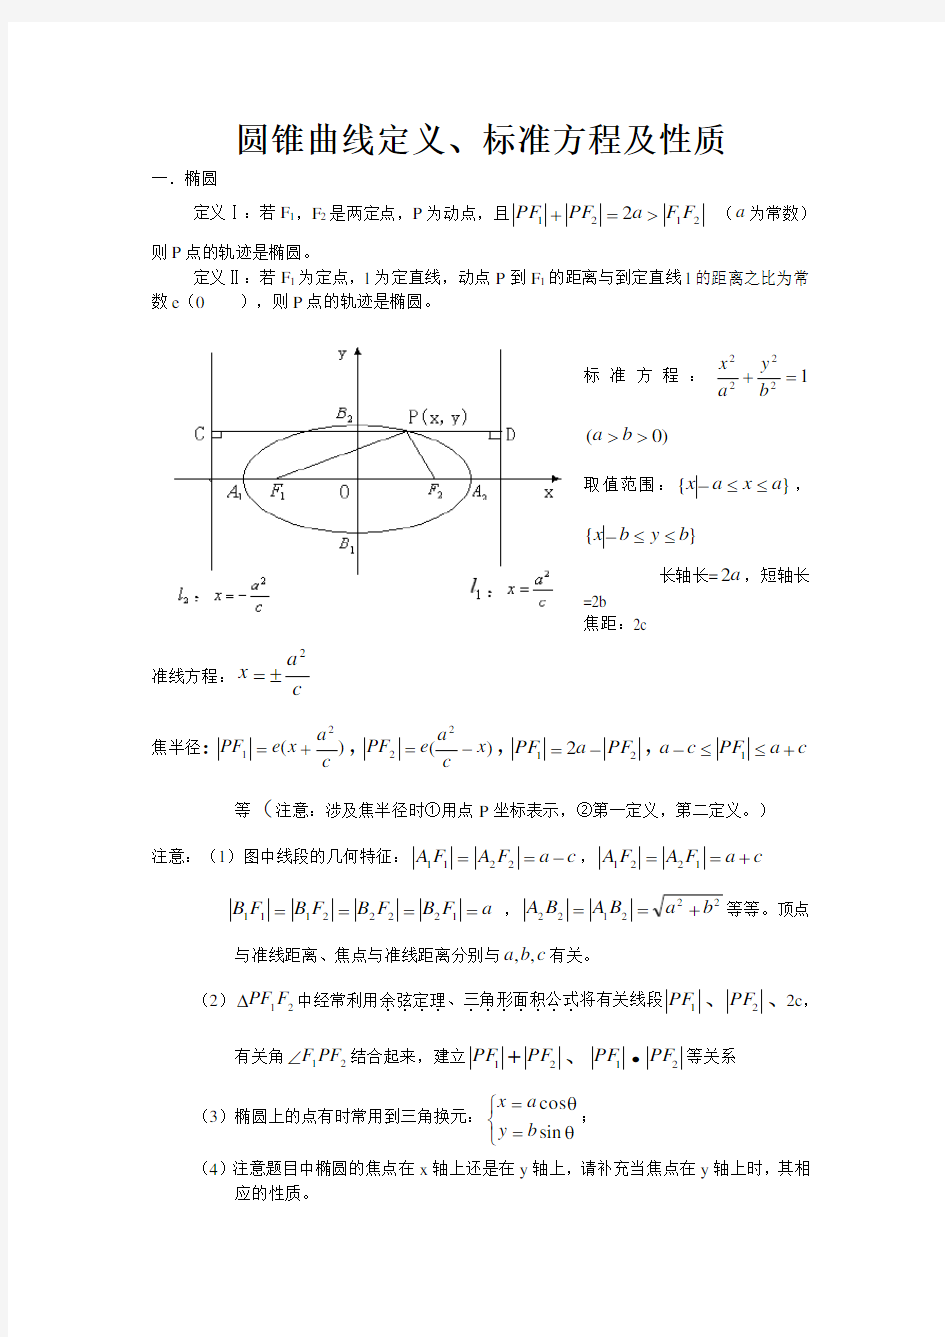 圆锥曲线定义标准方程及性质